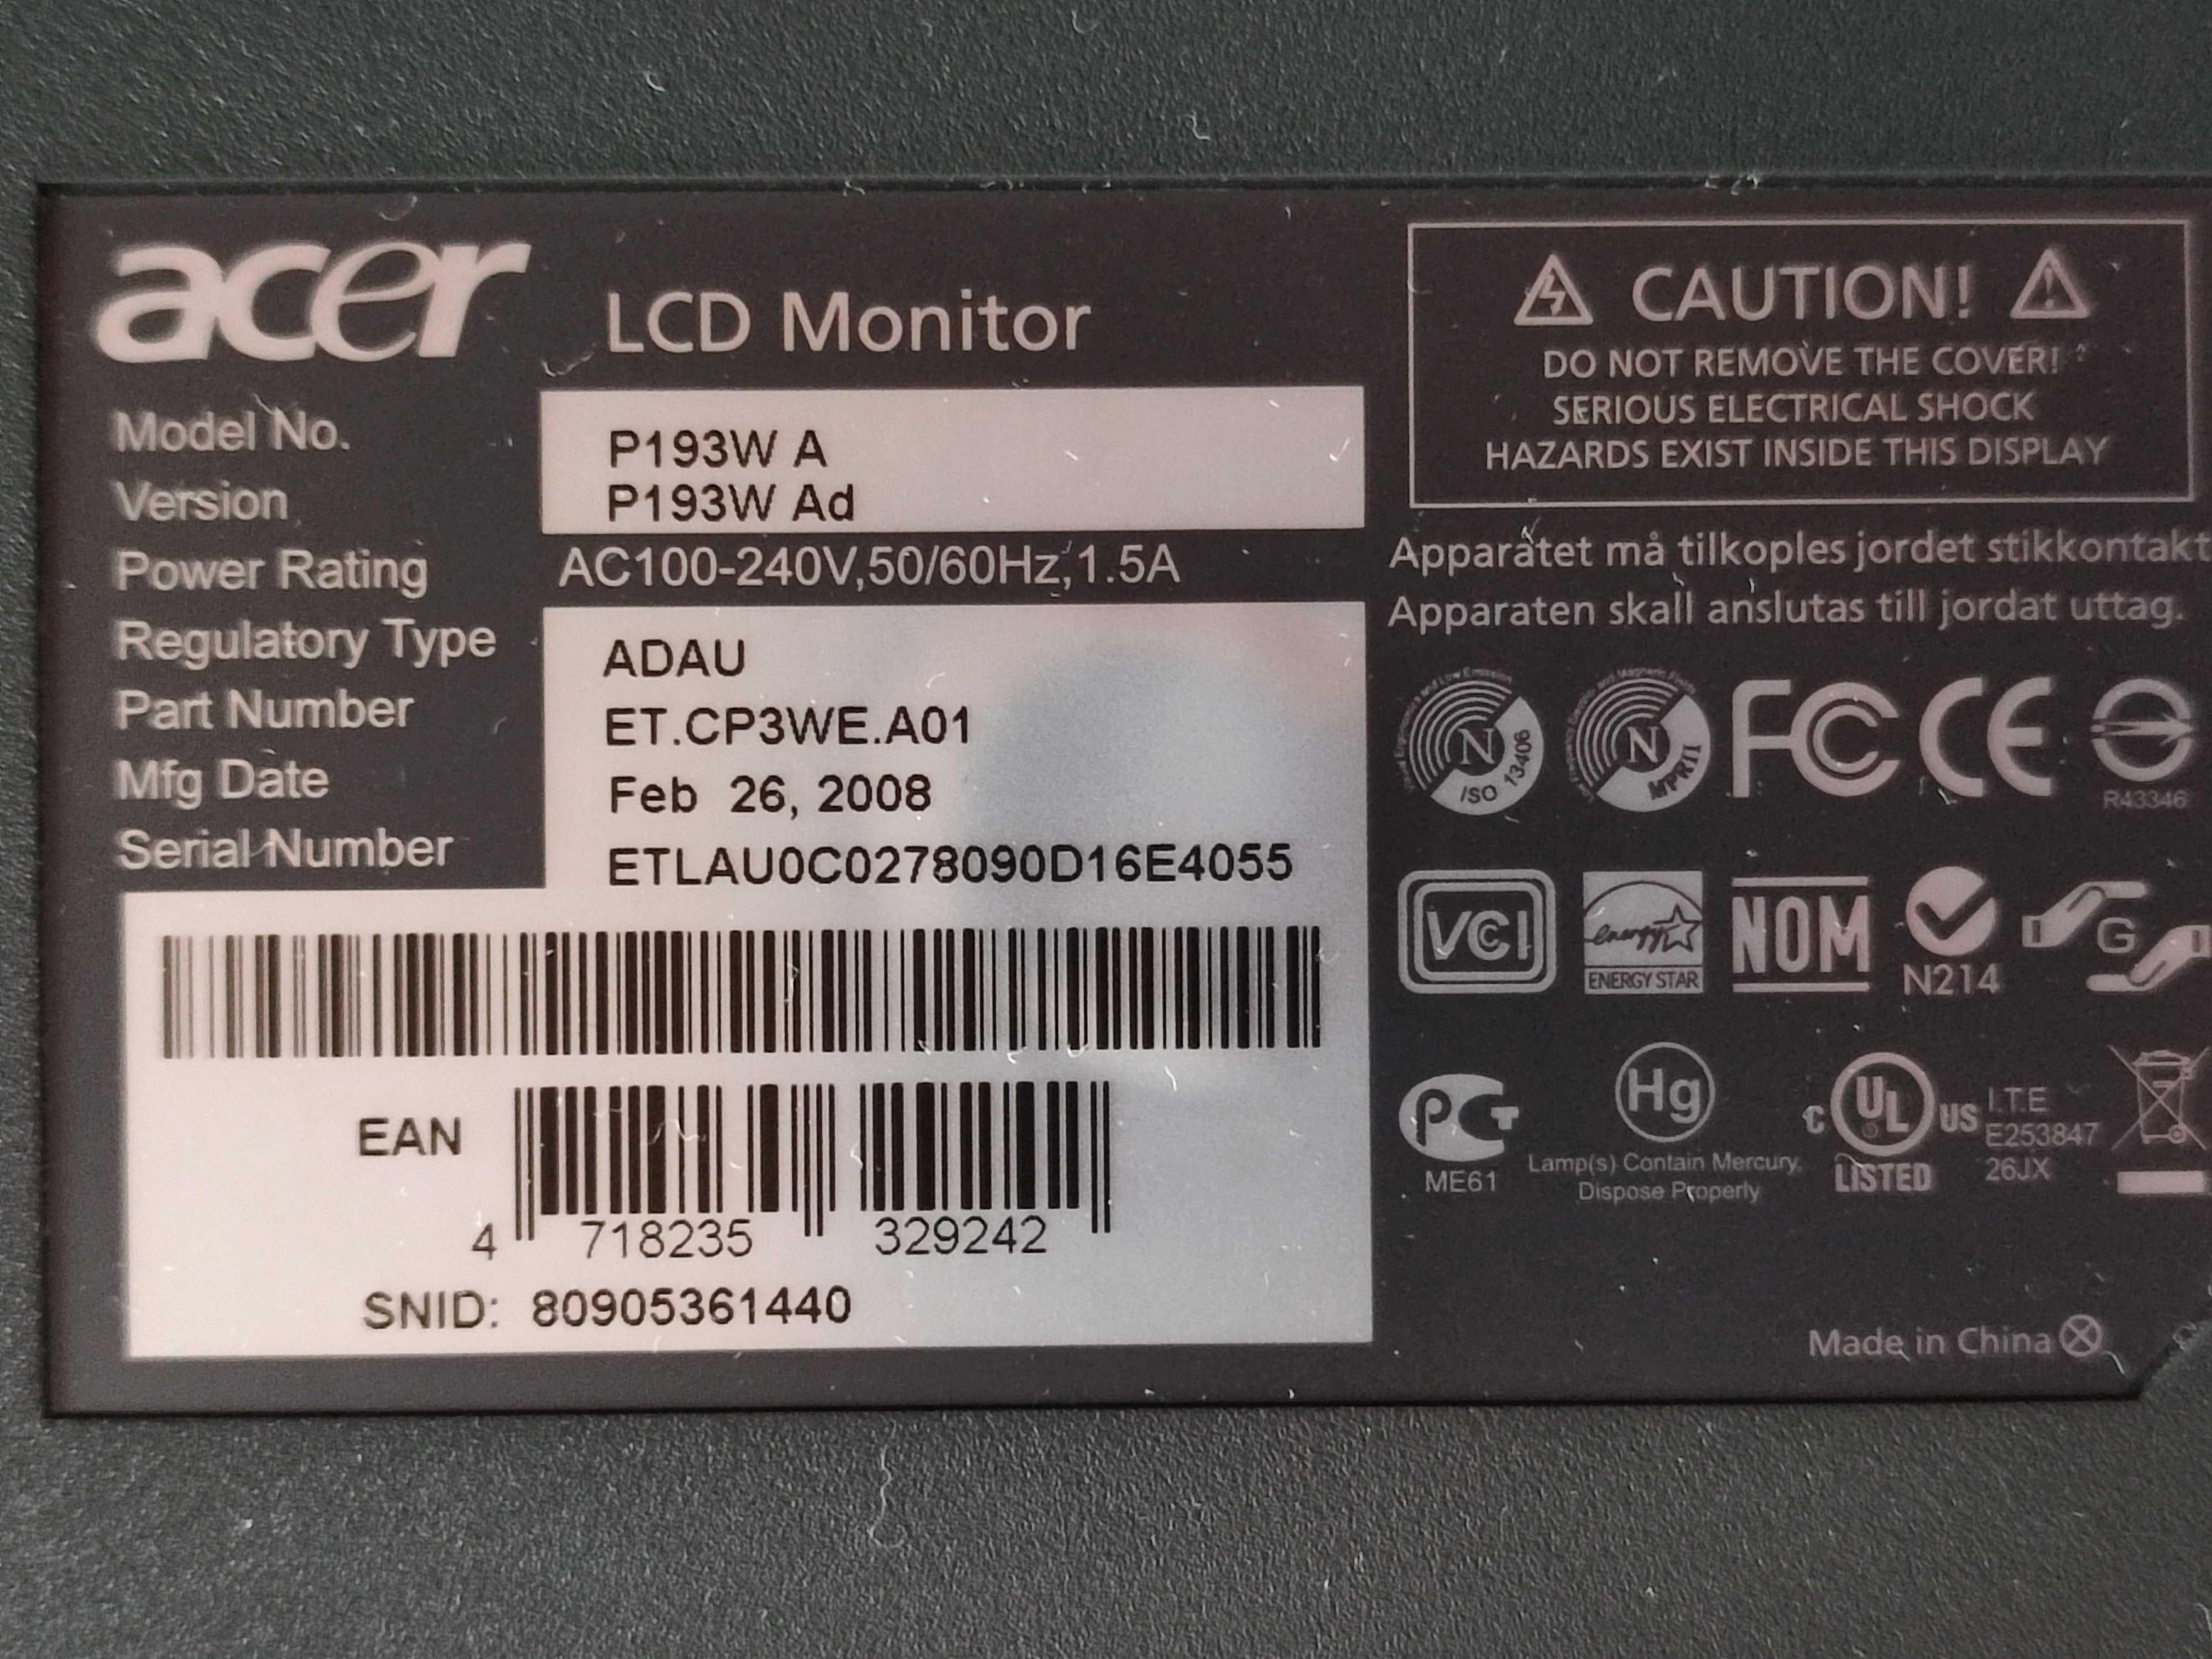 Продам монитор Acer P193W A на запчасти или восстановление.